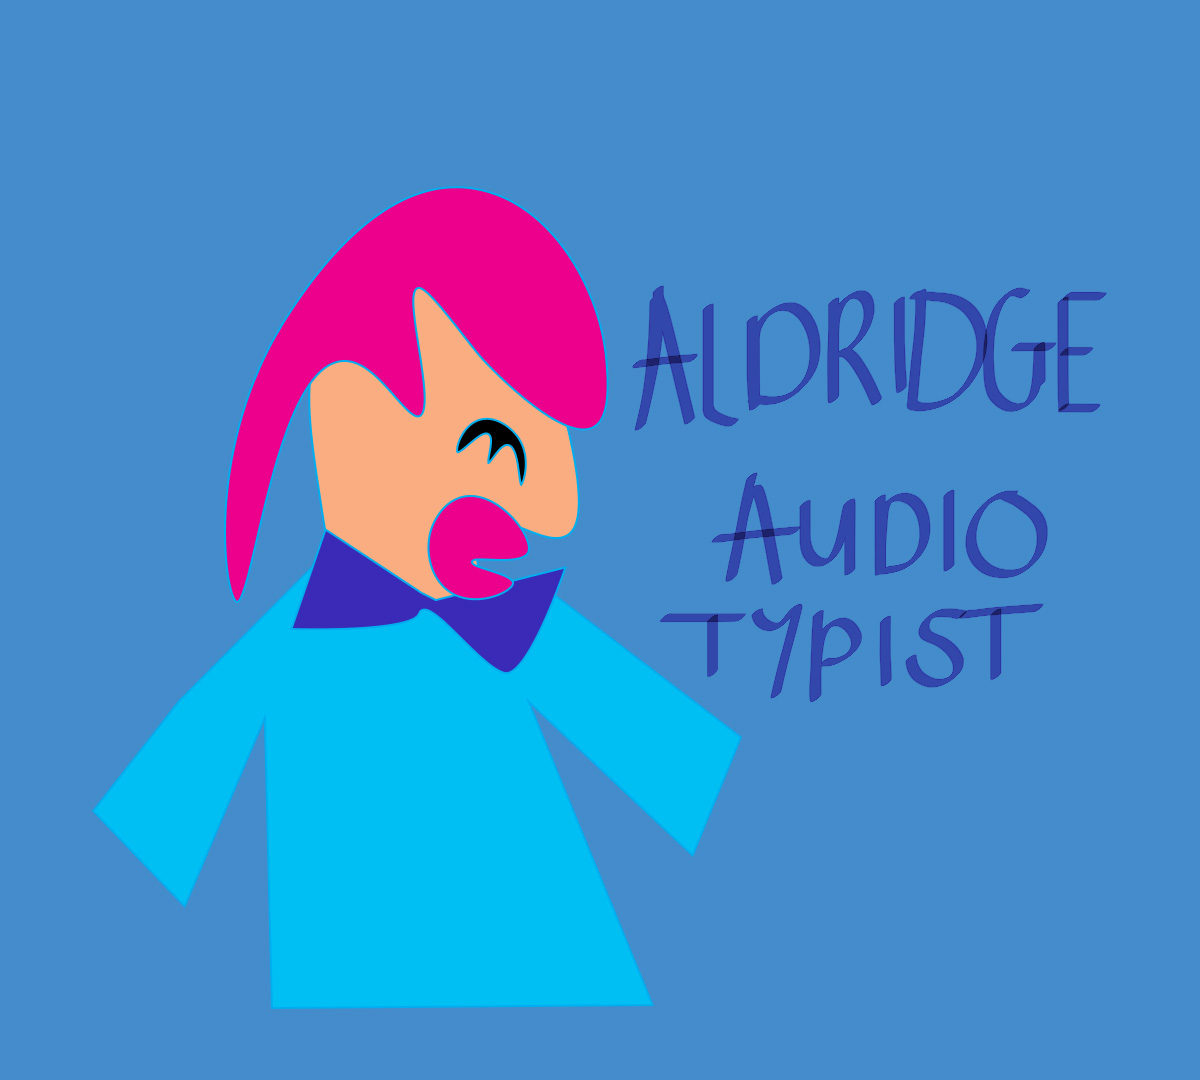 Aldridge Audio Typist, graphic of person